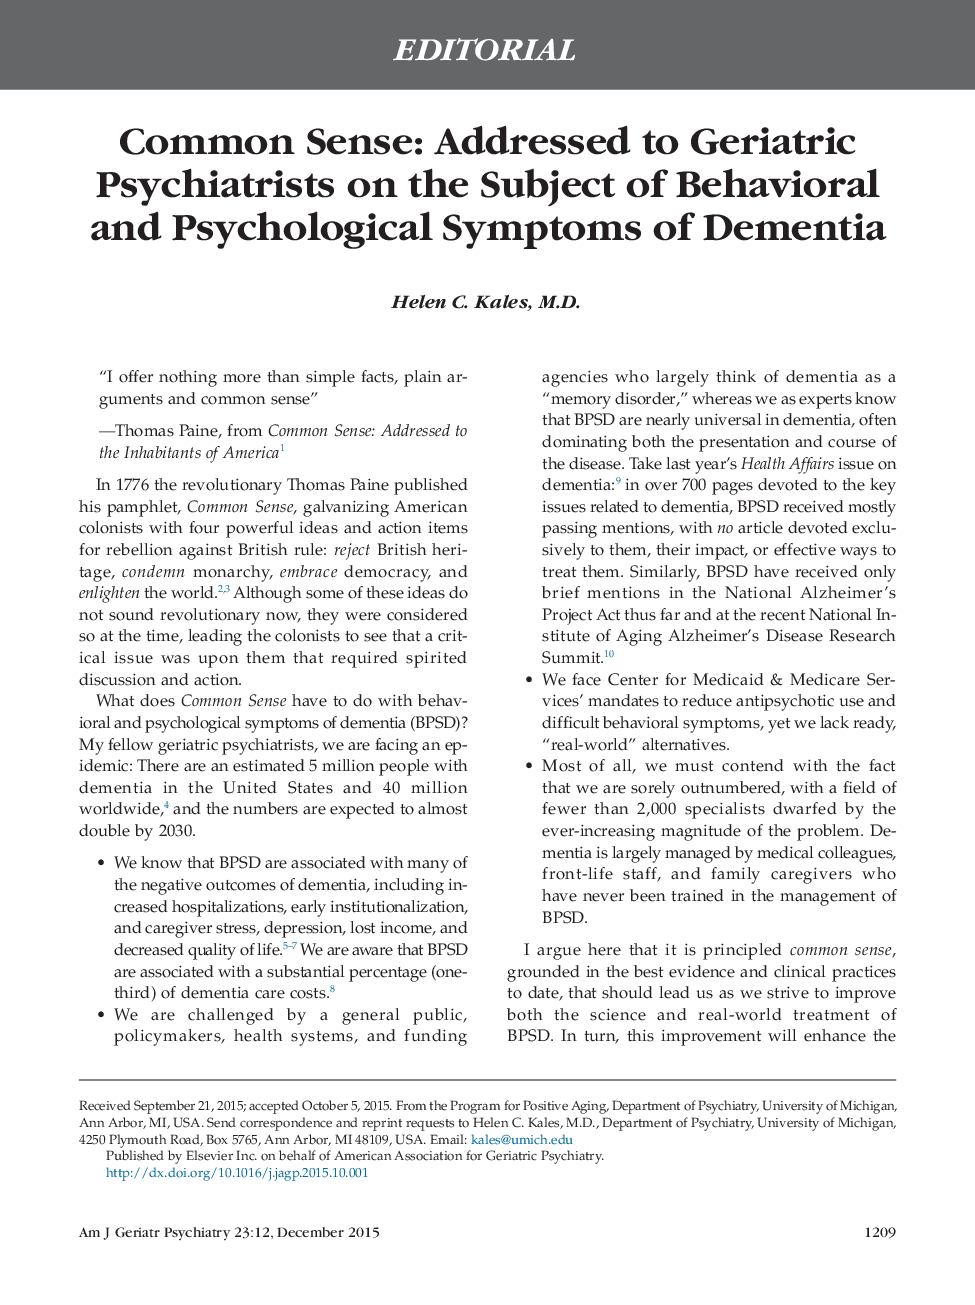 حس مشترک: به روانپزشکان روانپزشکی در مورد علائم رفتاری و روانی دمانس 